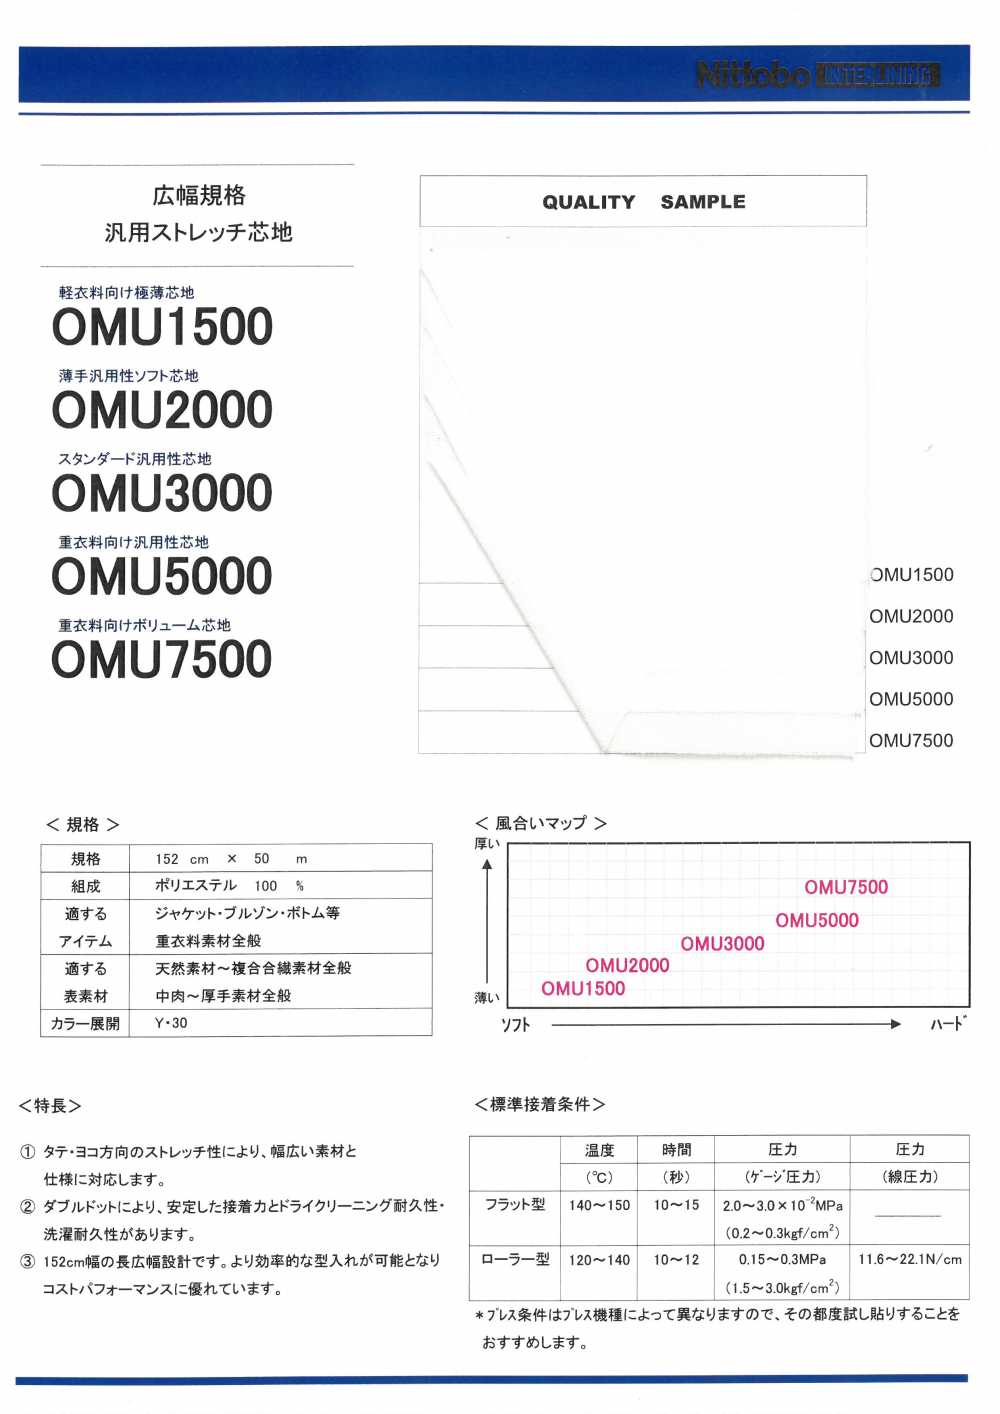 OMU2000 薄手汎用性ソフト芯地 日東紡インターライニング